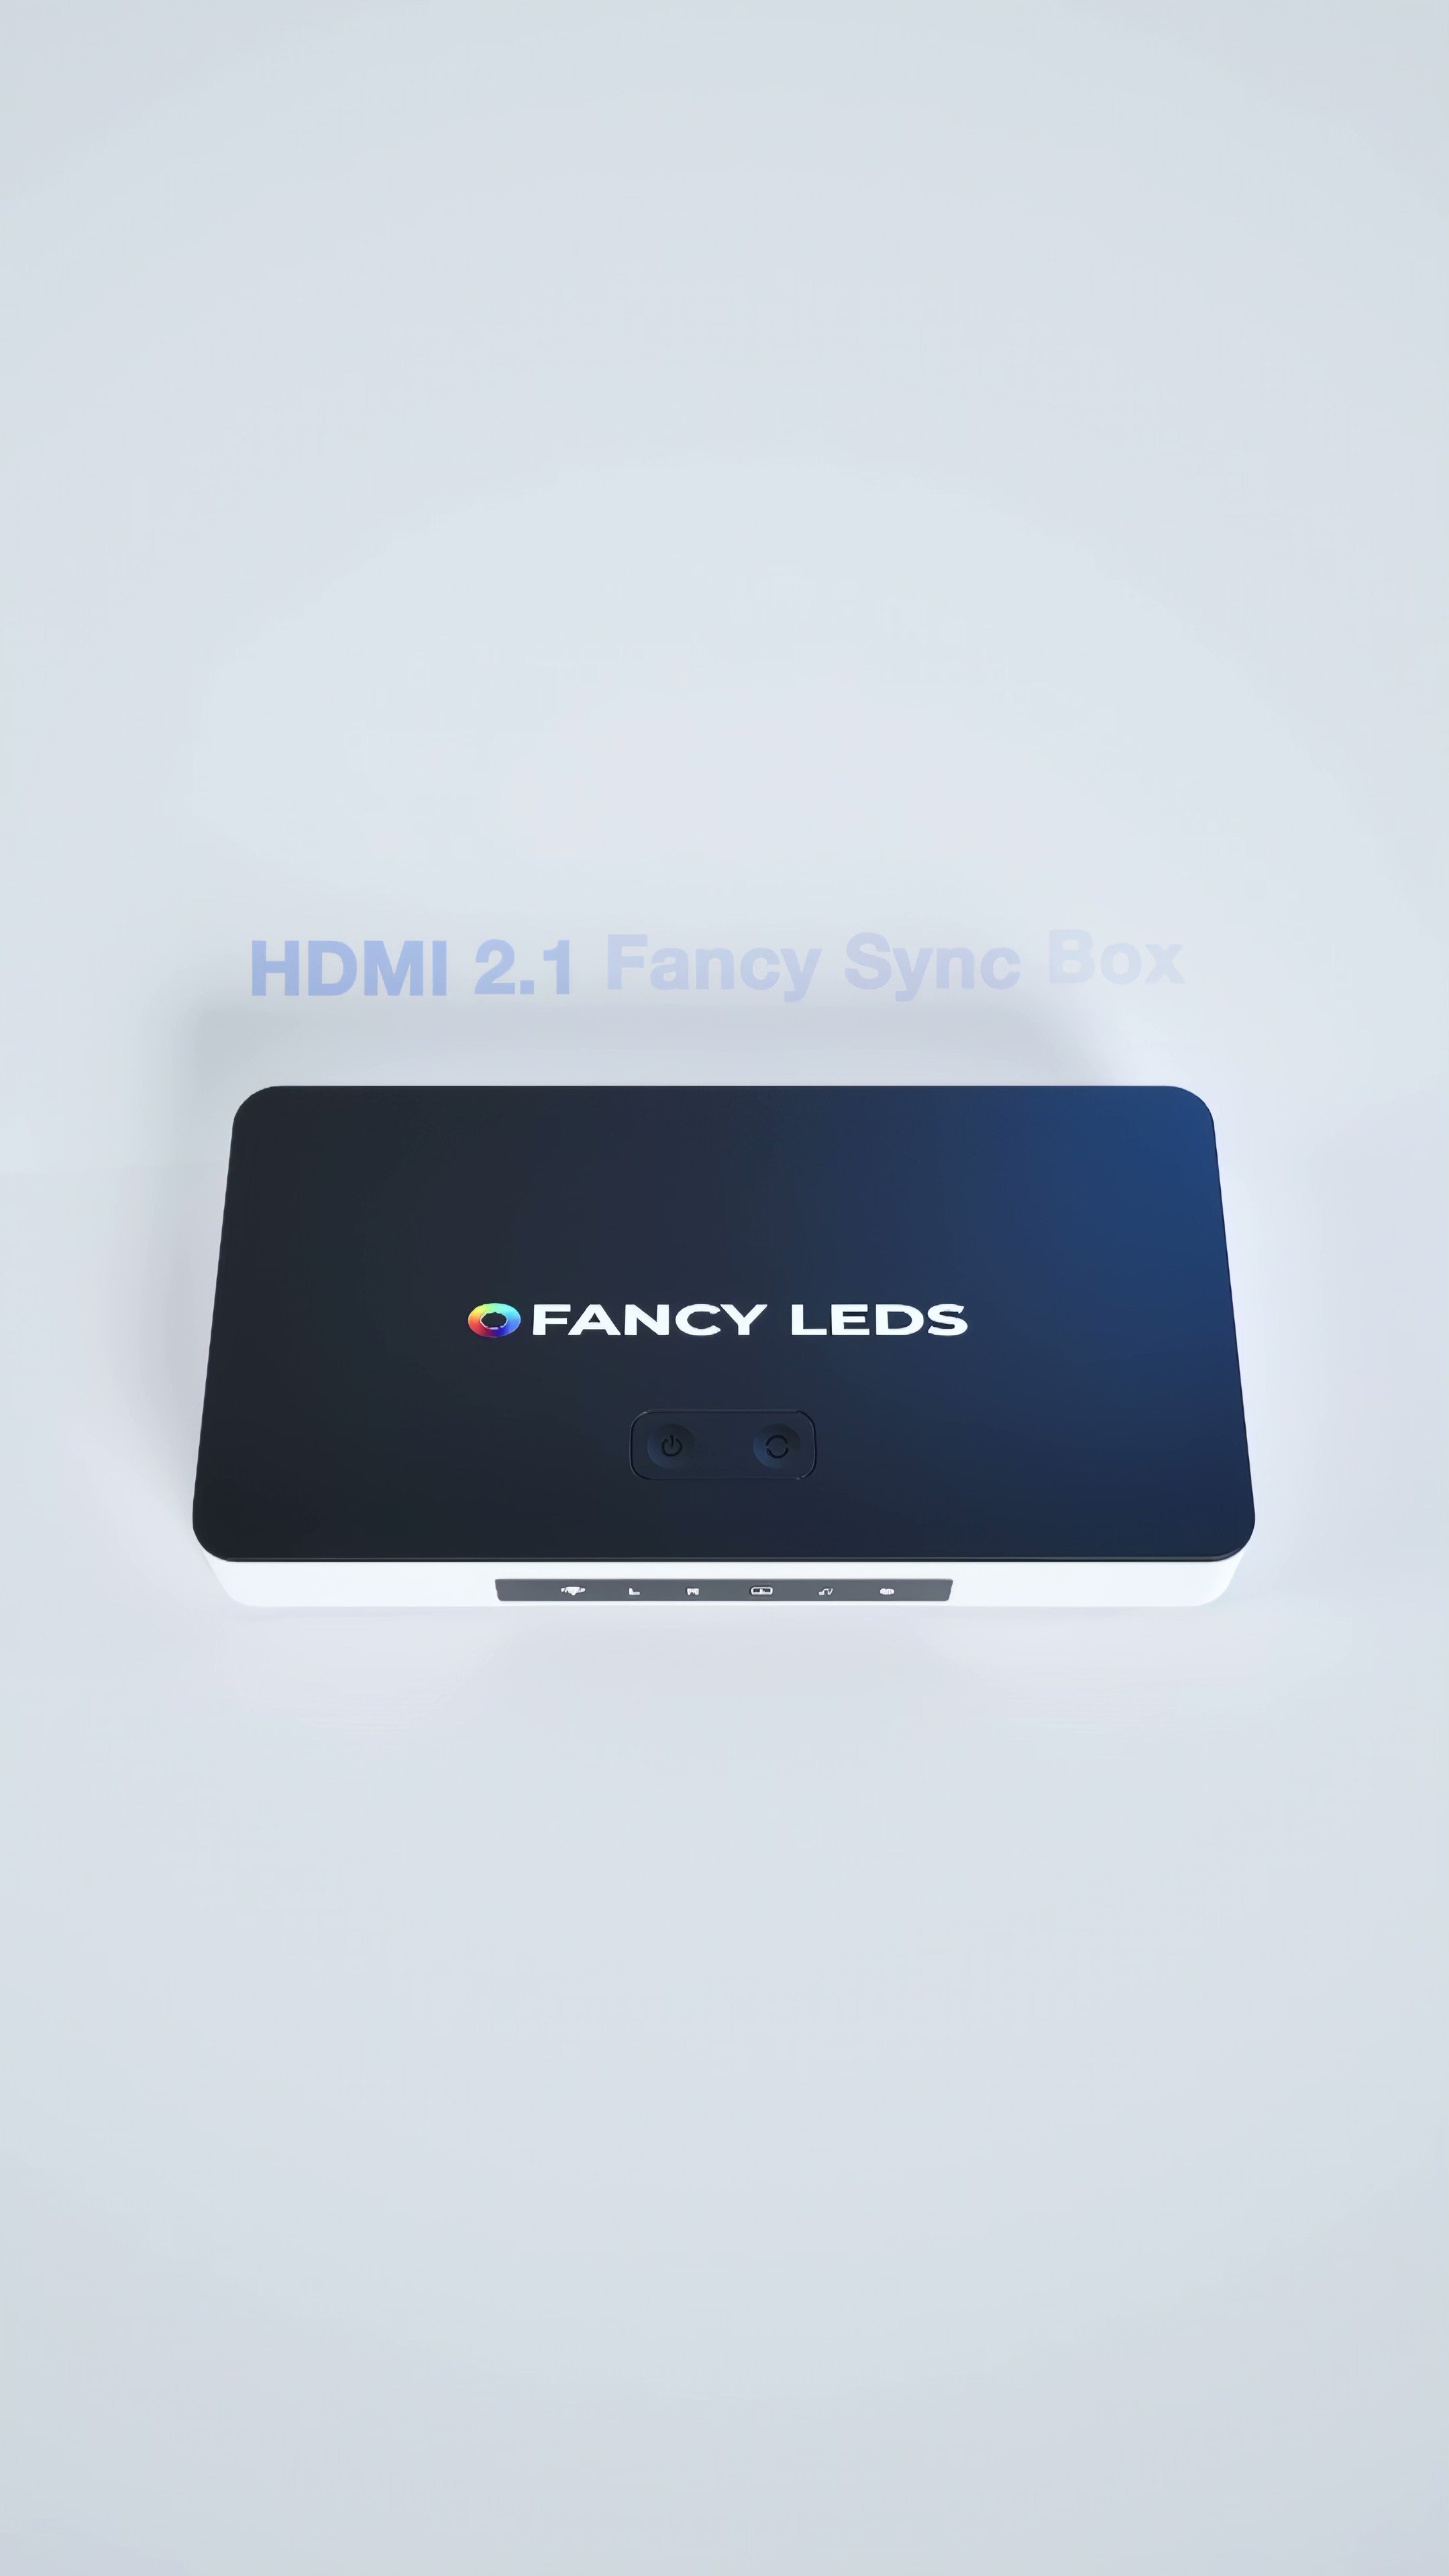 HDMI 2.1 Fancy Sync Box